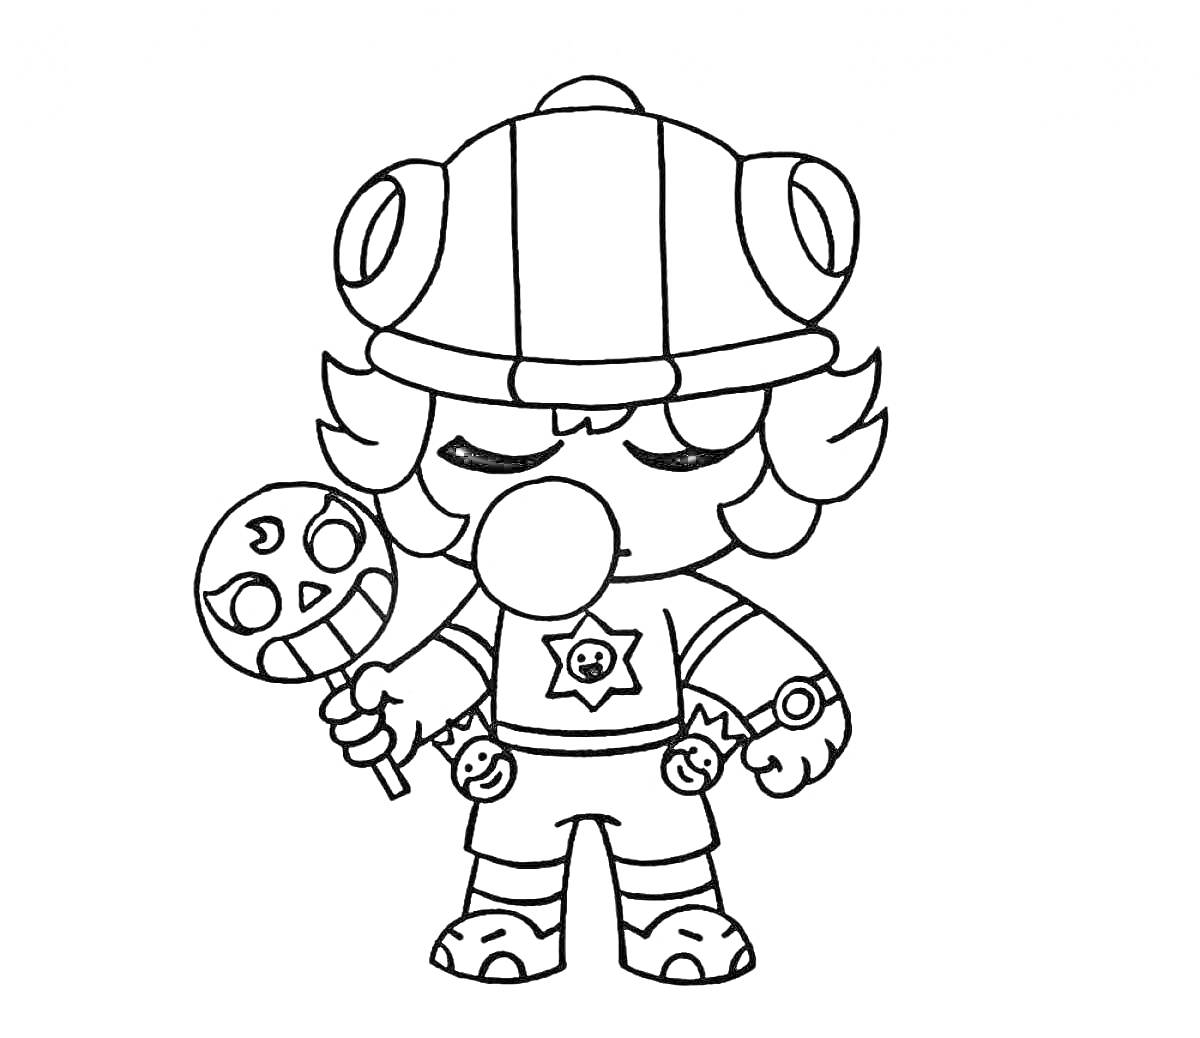 Раскраска Герой с леденцом, одетый в шлем с ушами, с пузырем из жвачки и звездой на груди